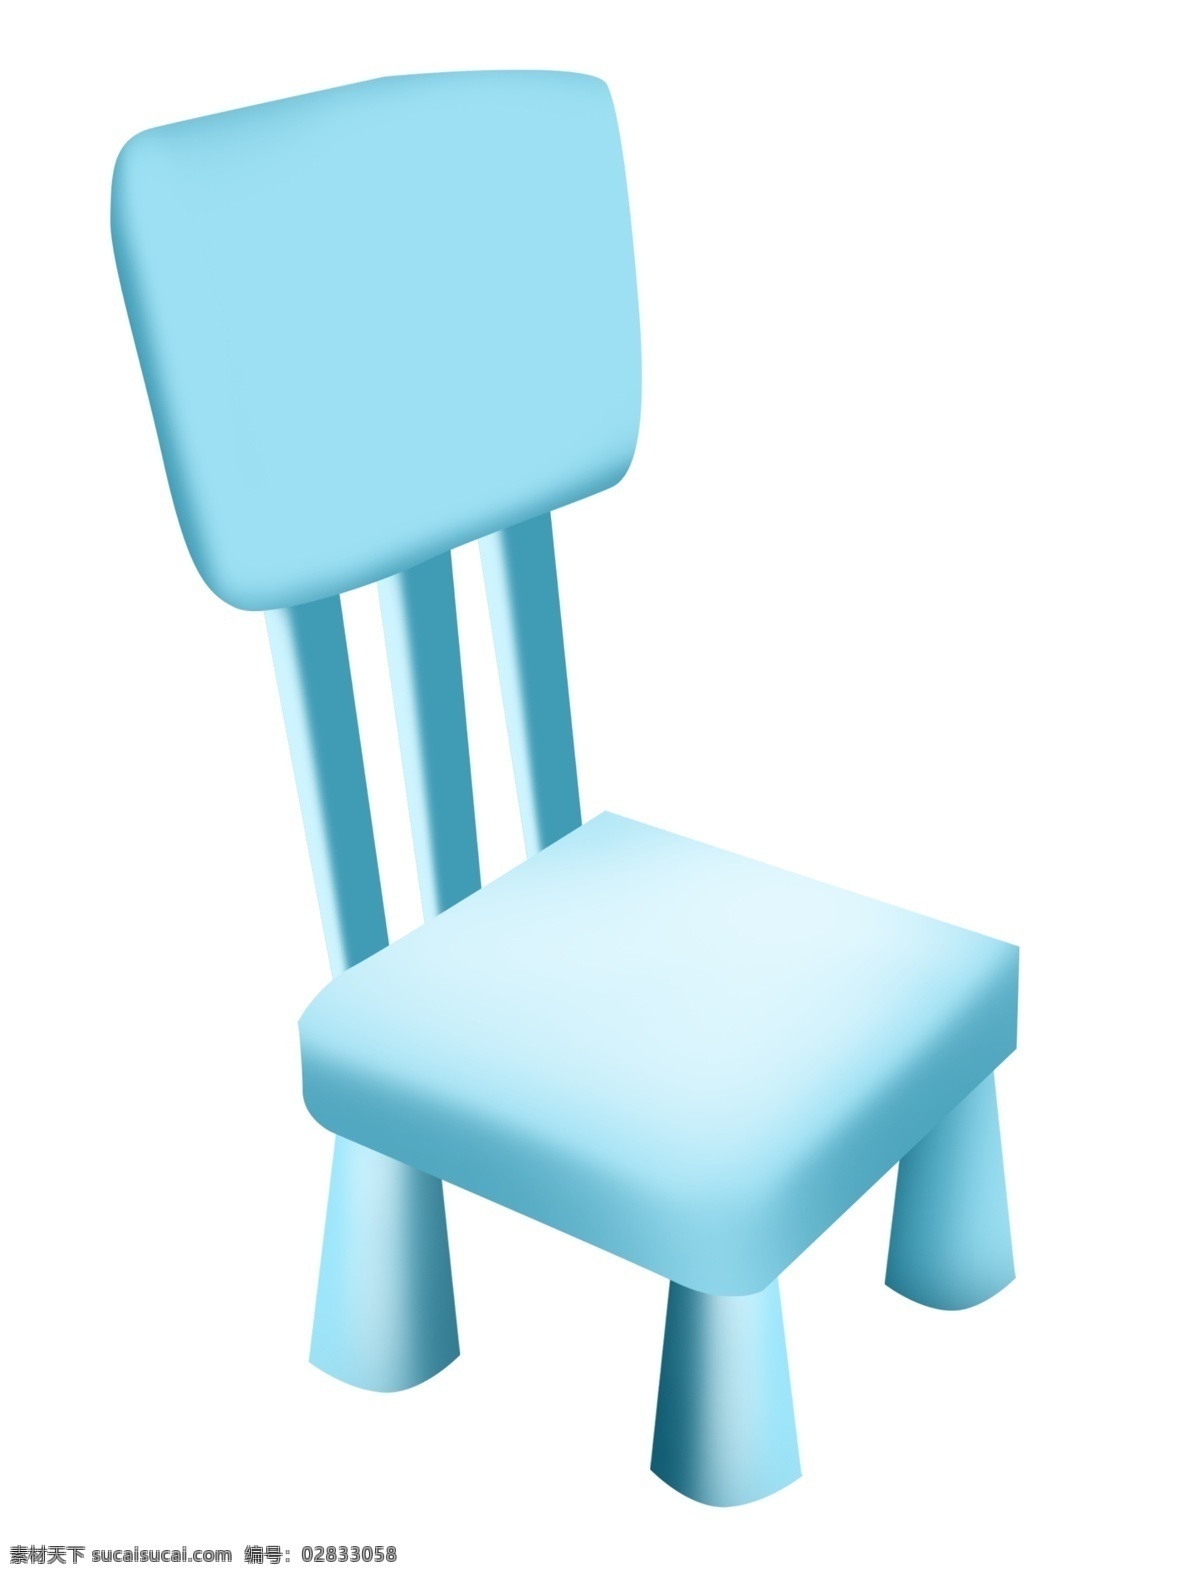 蓝色 椅子 装饰 插画 蓝色的椅子 真皮椅子 家具椅子 漂亮的椅子 创意椅子 家装椅子 立体椅子